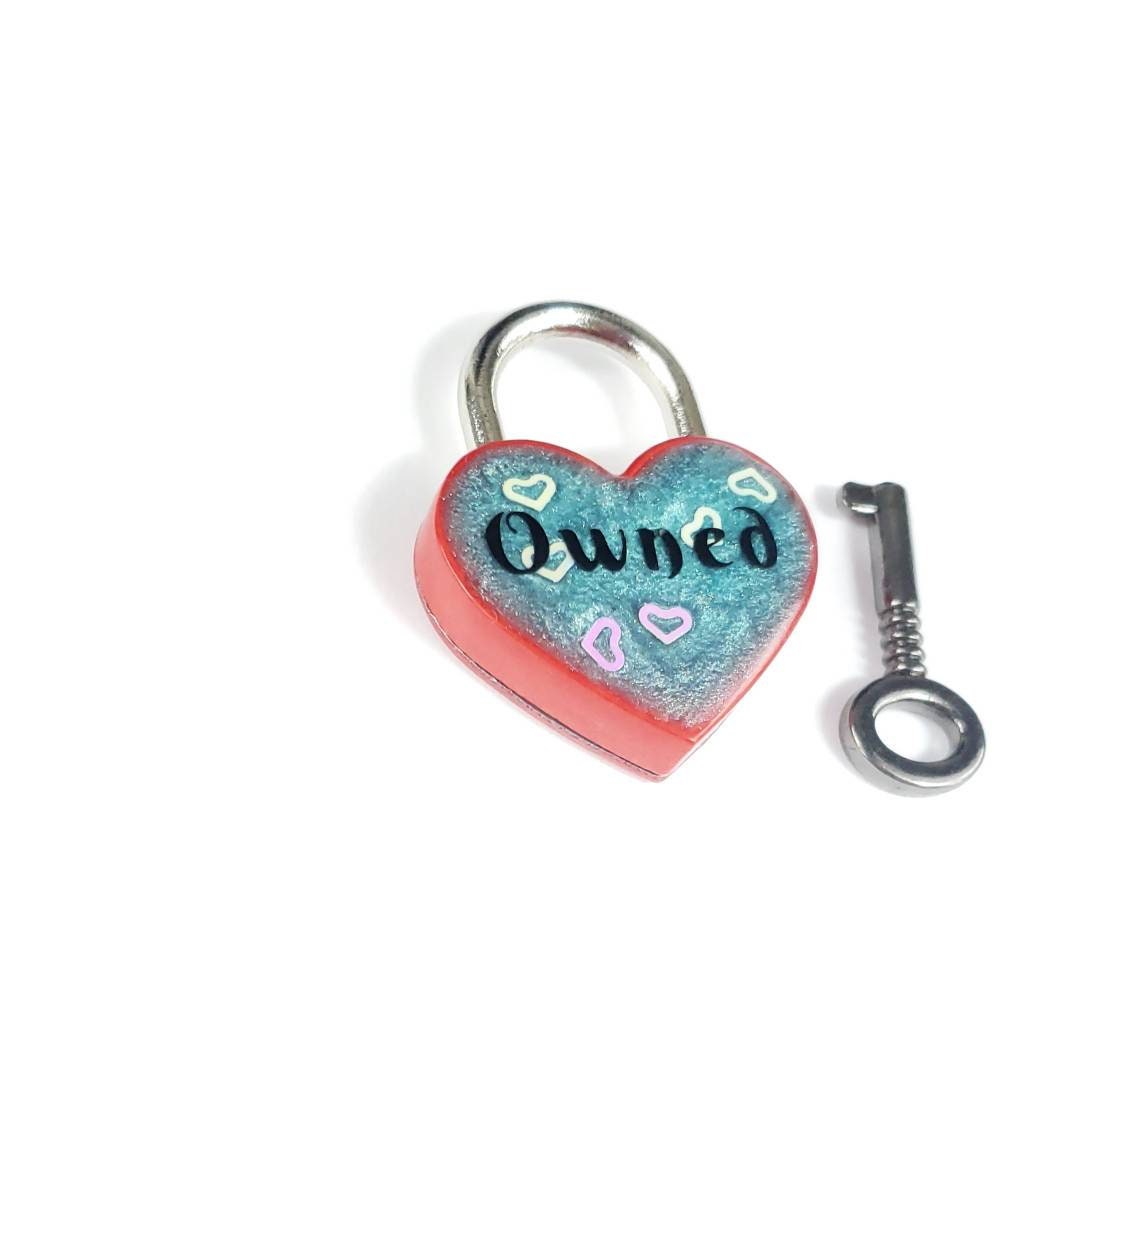 Owned Heart Pad Lock, Resin Aluminum Heart Lock, Collar Closure Lock, BDSM Lock, DDLG Lock